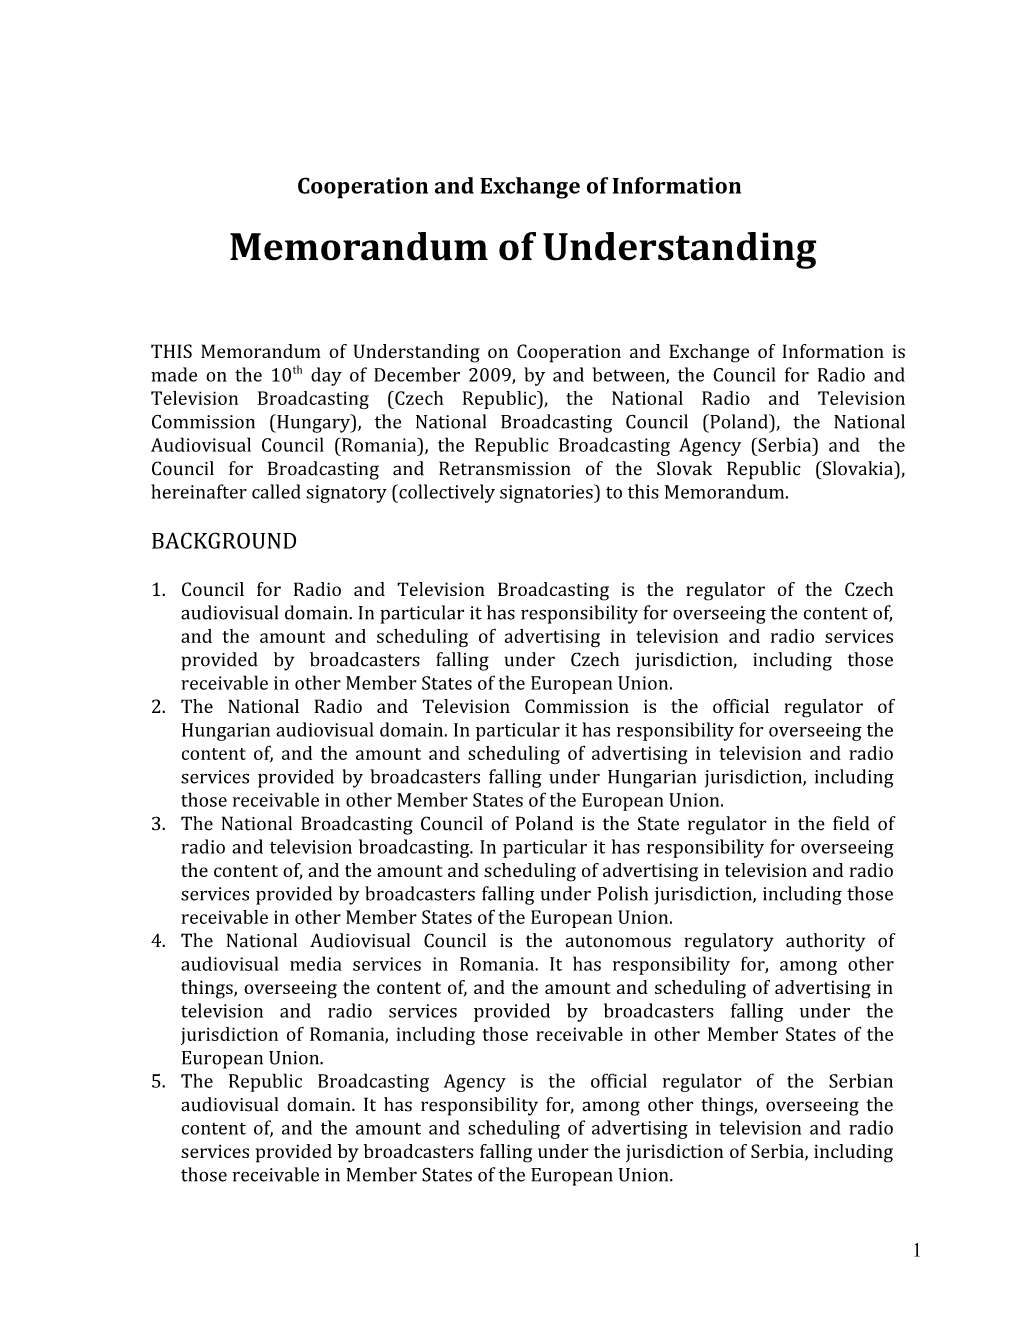 Cooperation and Exchange of Information - Memorandum of Understanding